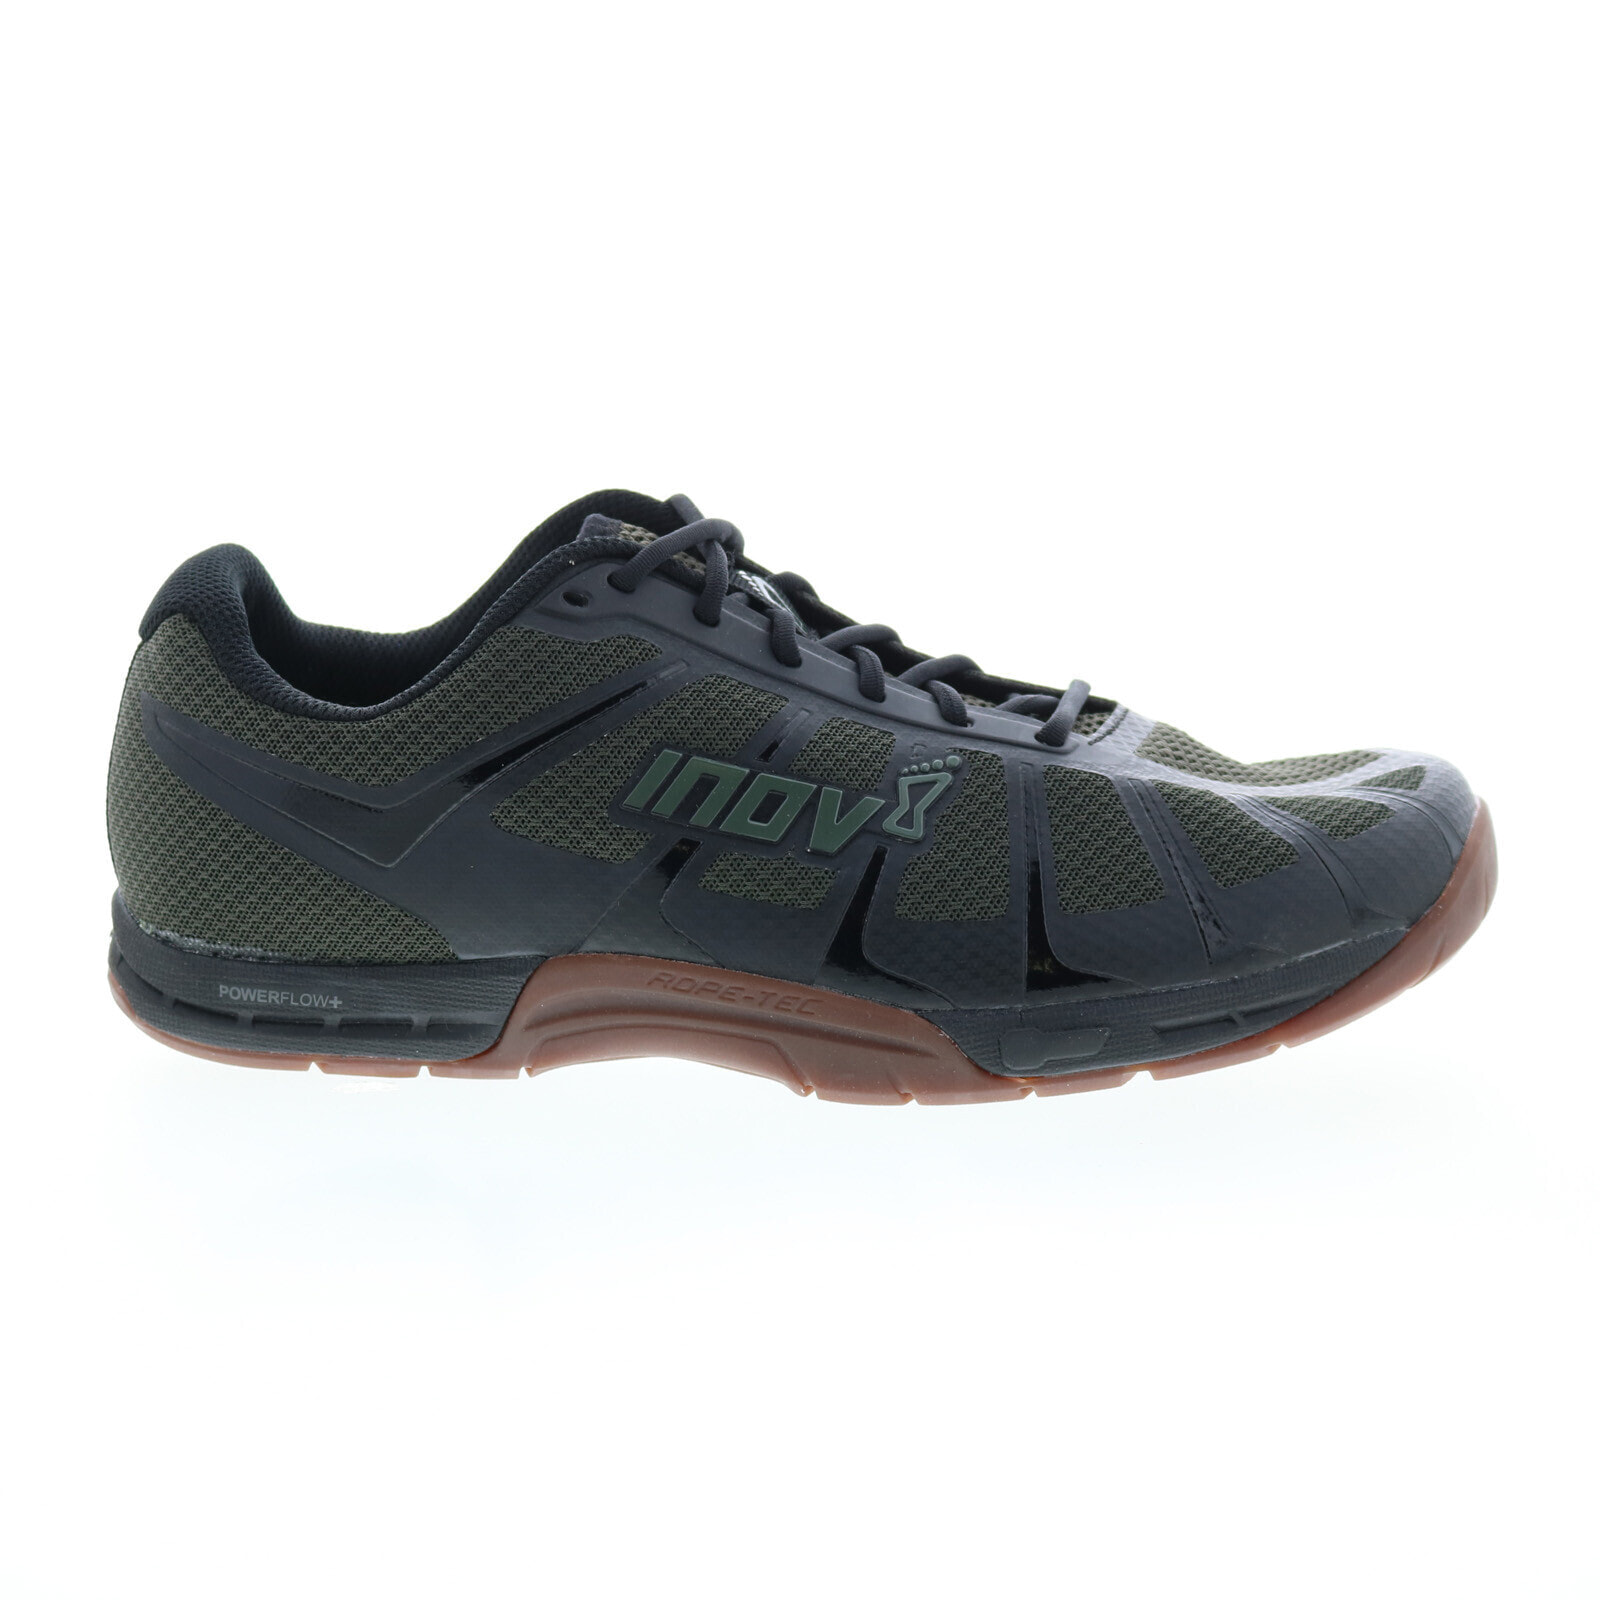 Inov-8 F-Lite 235 V3 000867-BKOLGU Mens Green Athletic Cross Training Shoes